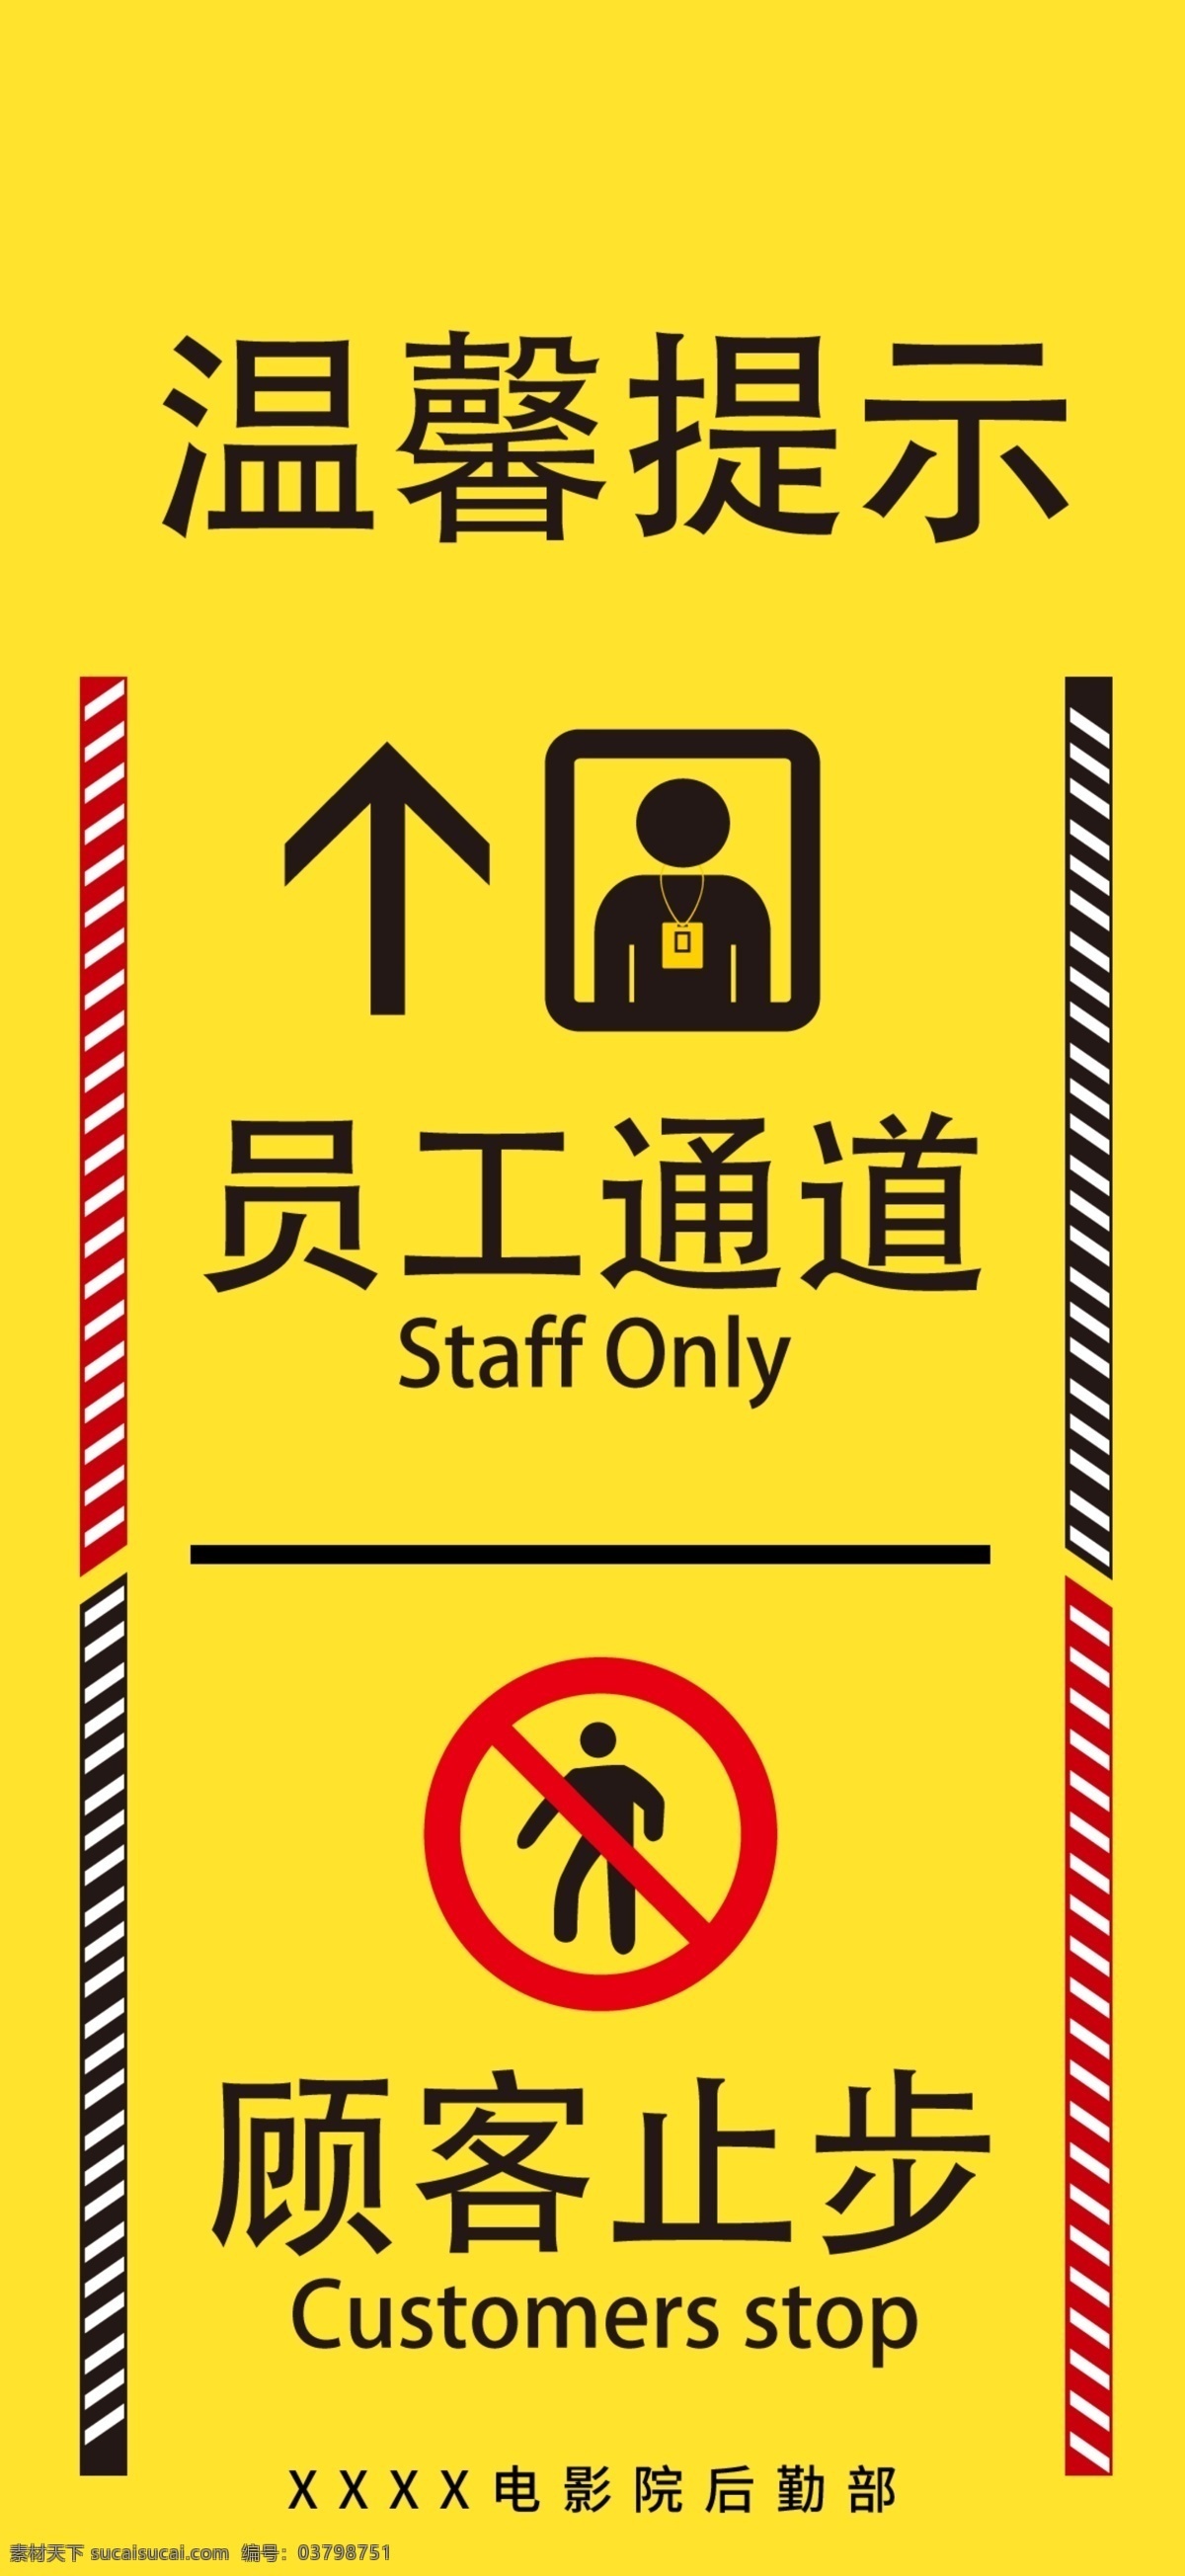 员工 通道 顾客 止步 指路牌 员工通道 顾客止步 企业 标识 指示 牌子